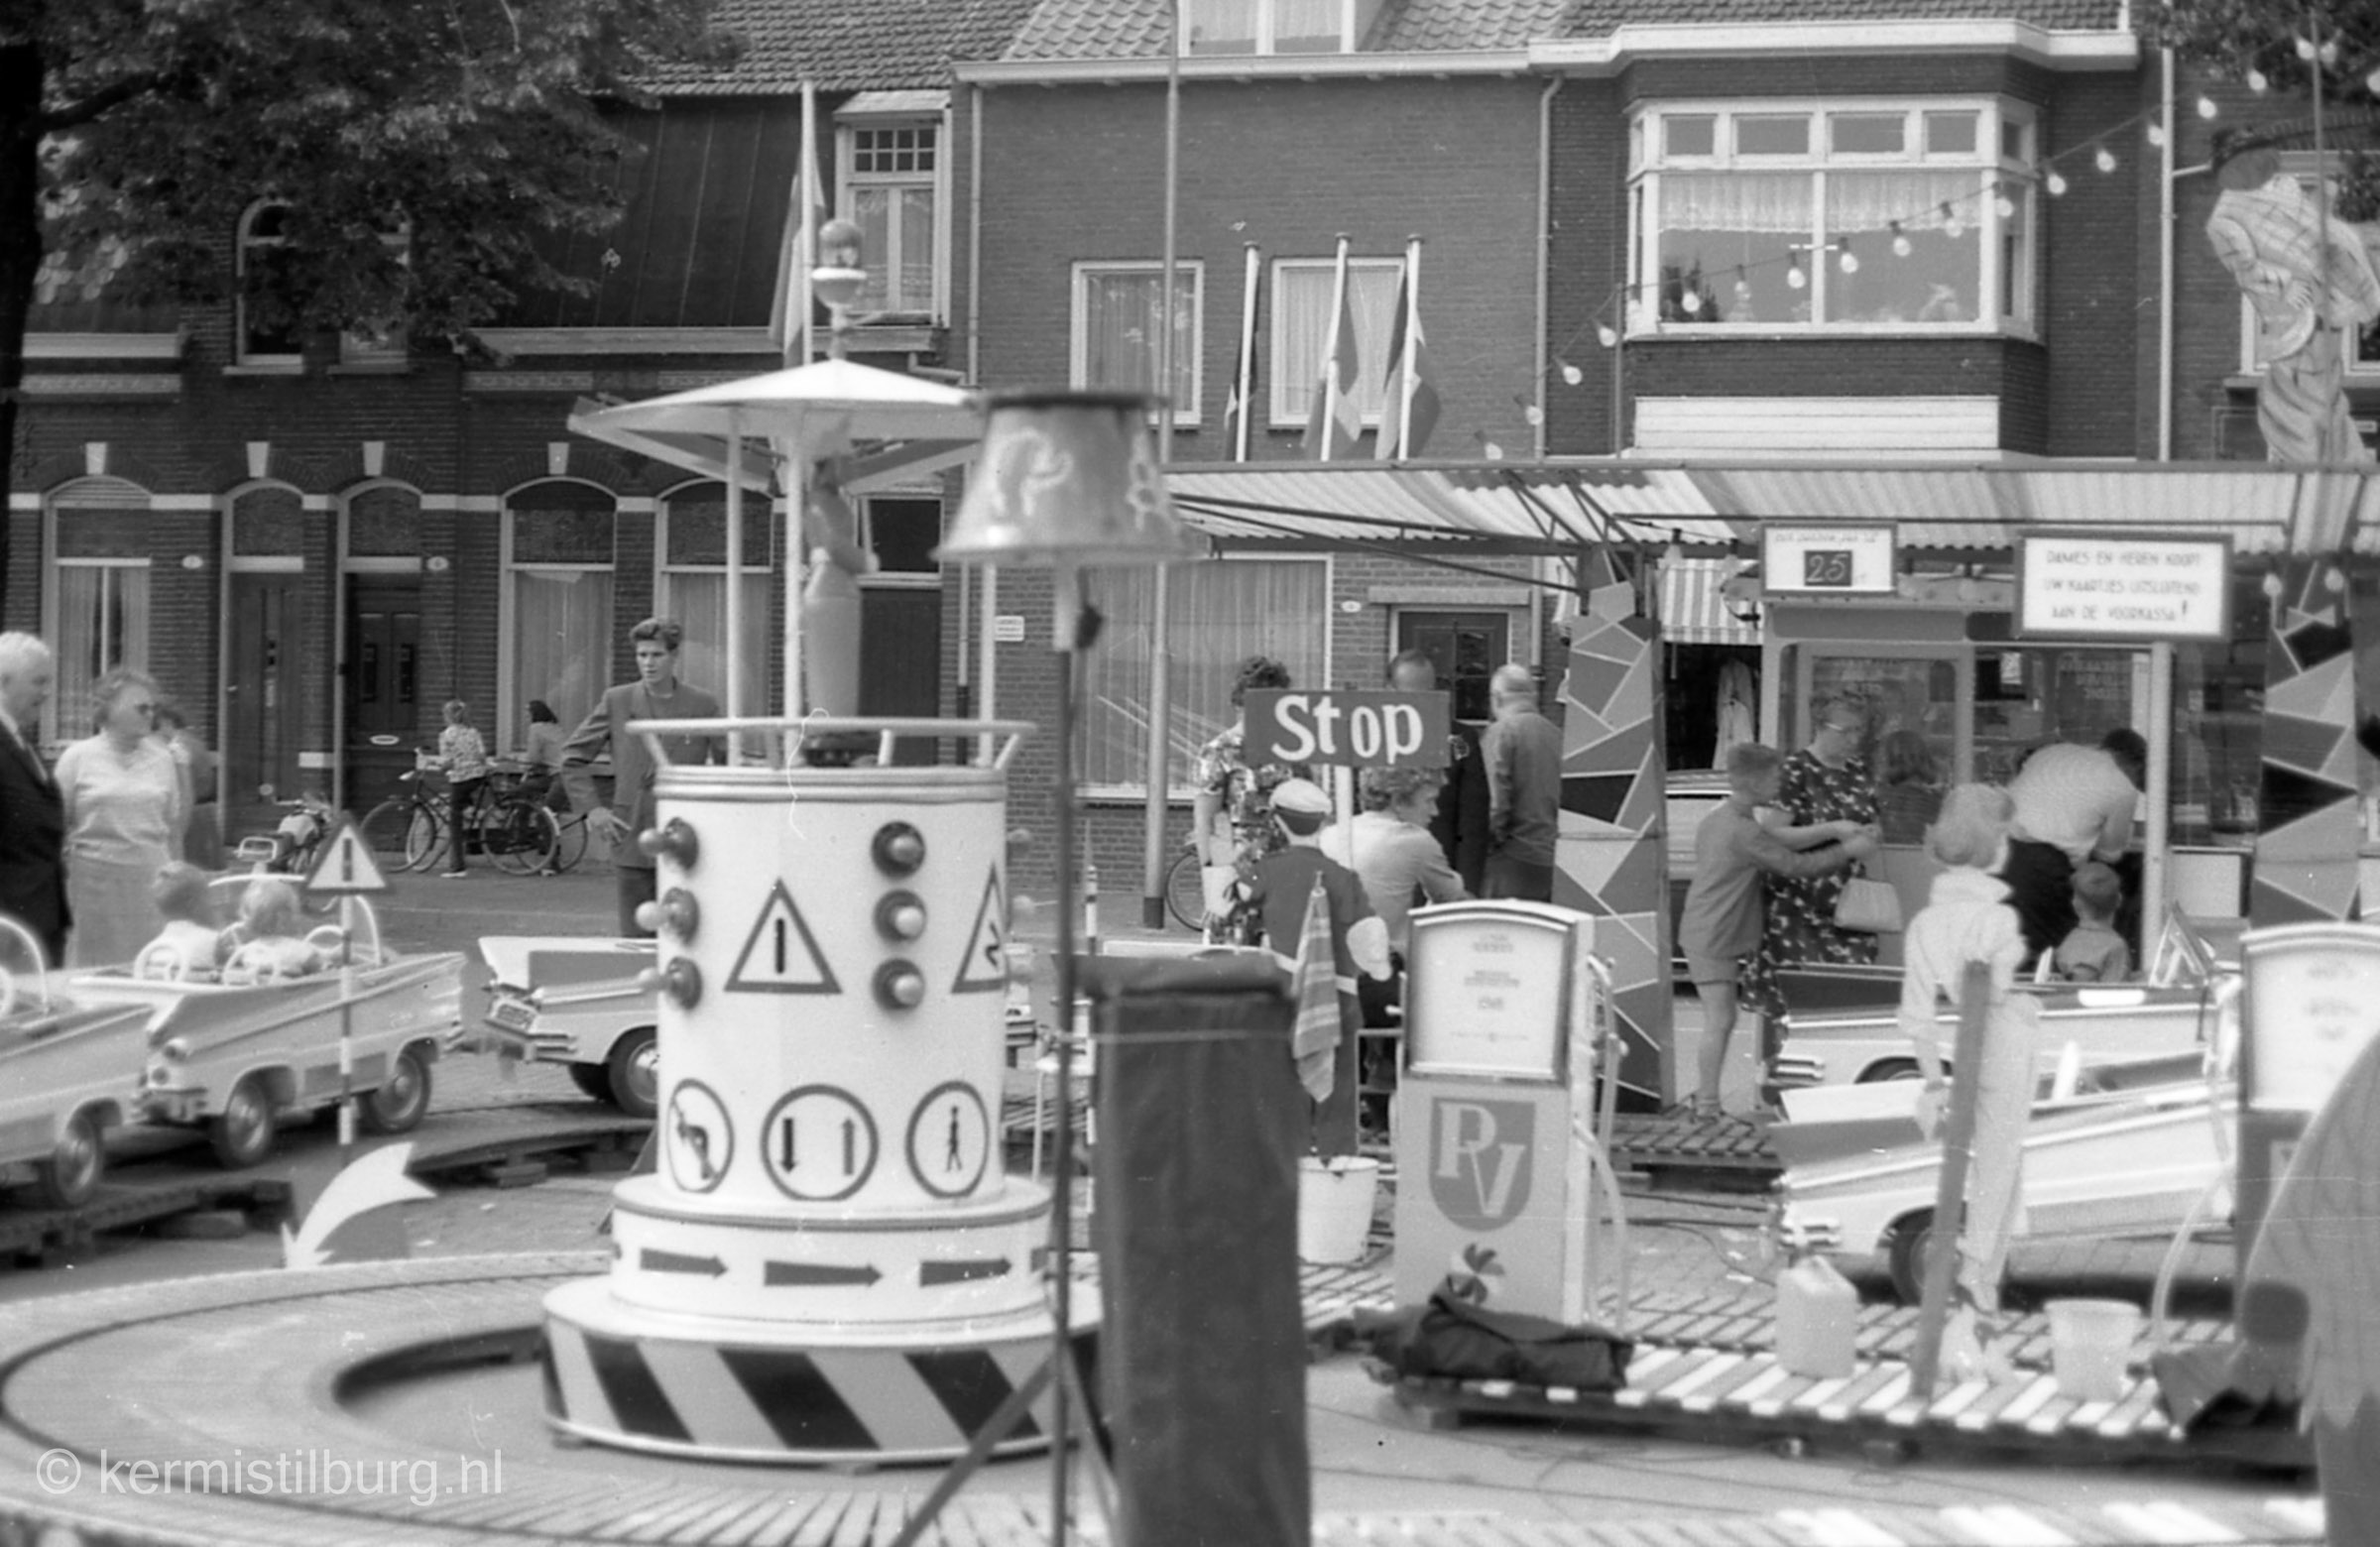 1964, Kermis, Tilburg, Tilburgse kermis, skc